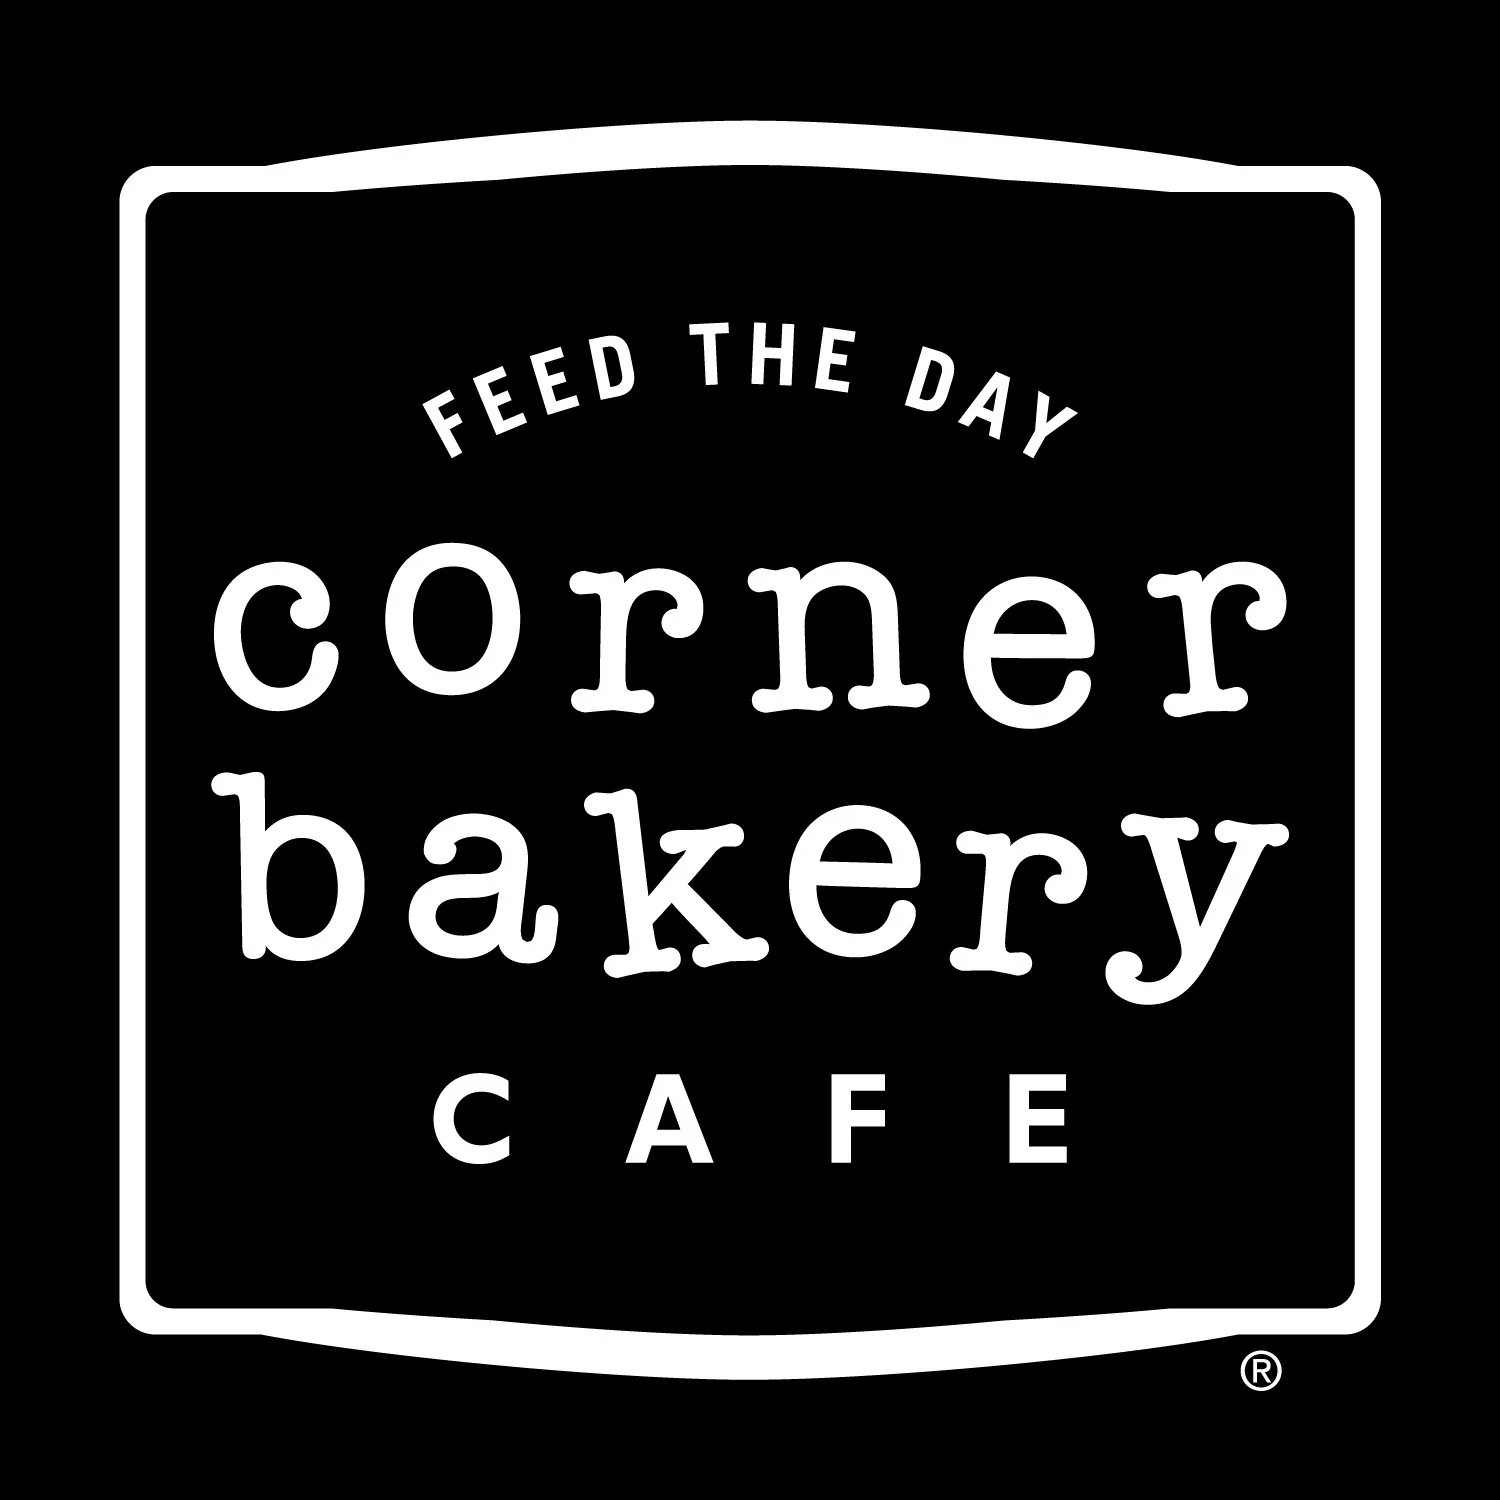 Corner Bakery Logo